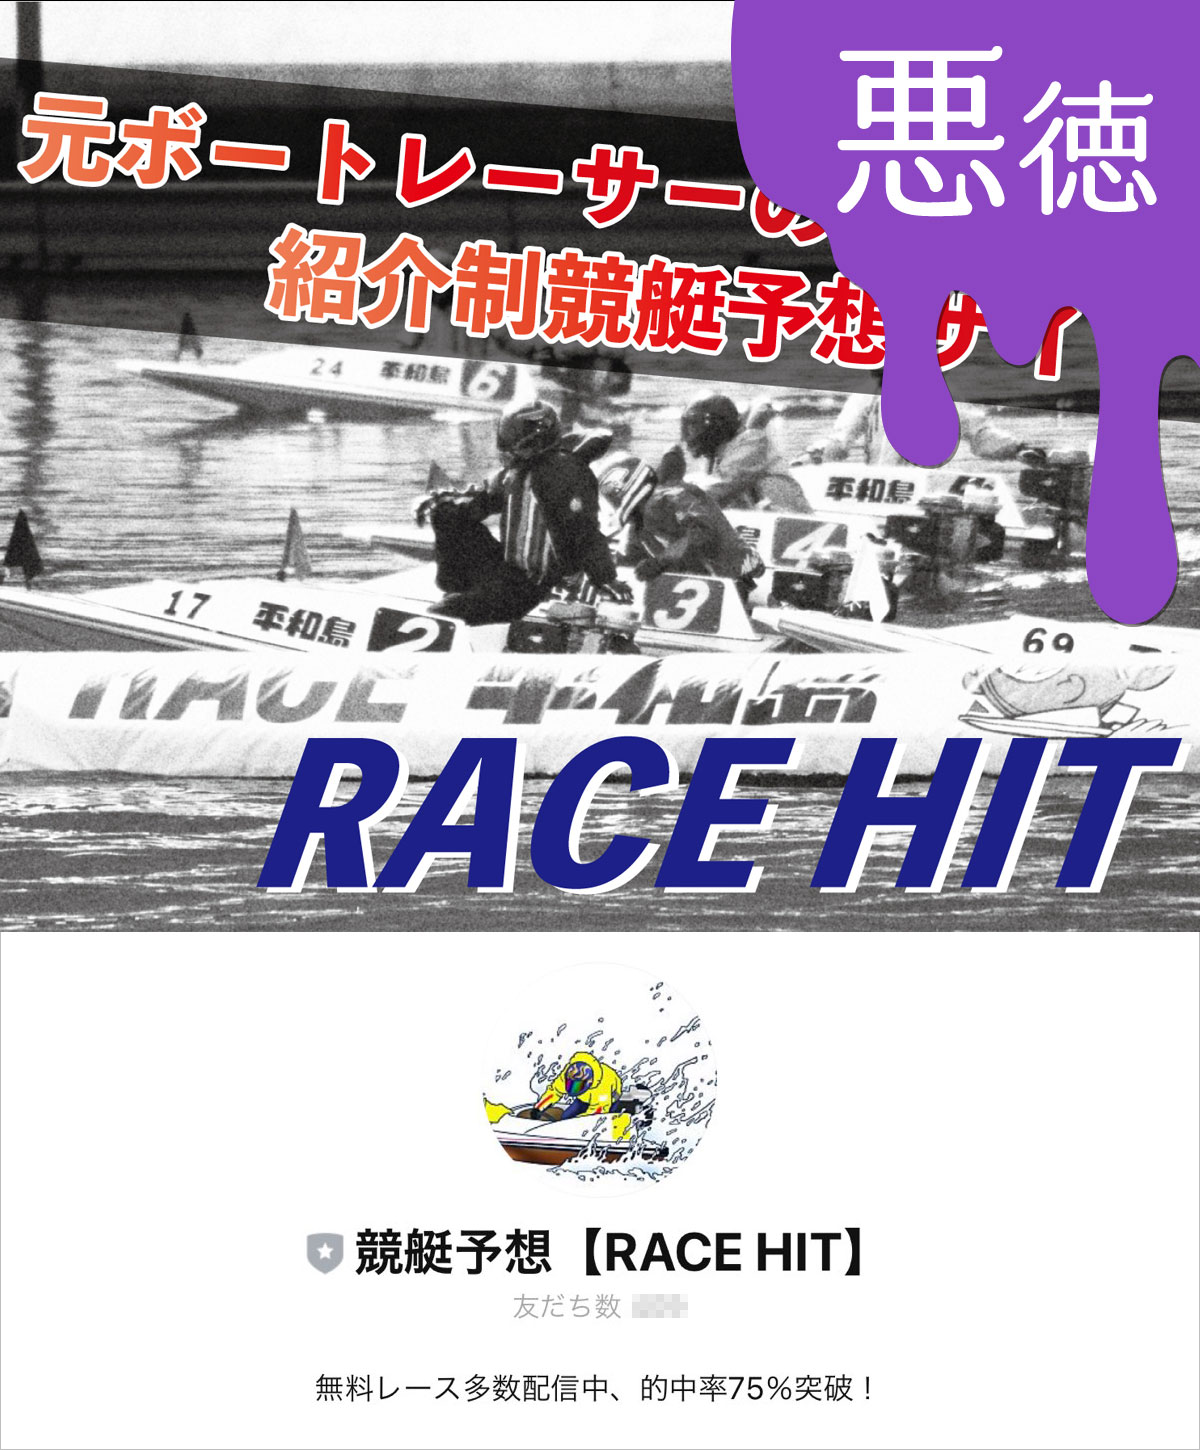 悪徳 競艇予想RACE HIT(レースヒット) 競艇予想サイトの中でも優良サイトなのか、悪徳サイトかを口コミなどからも検証